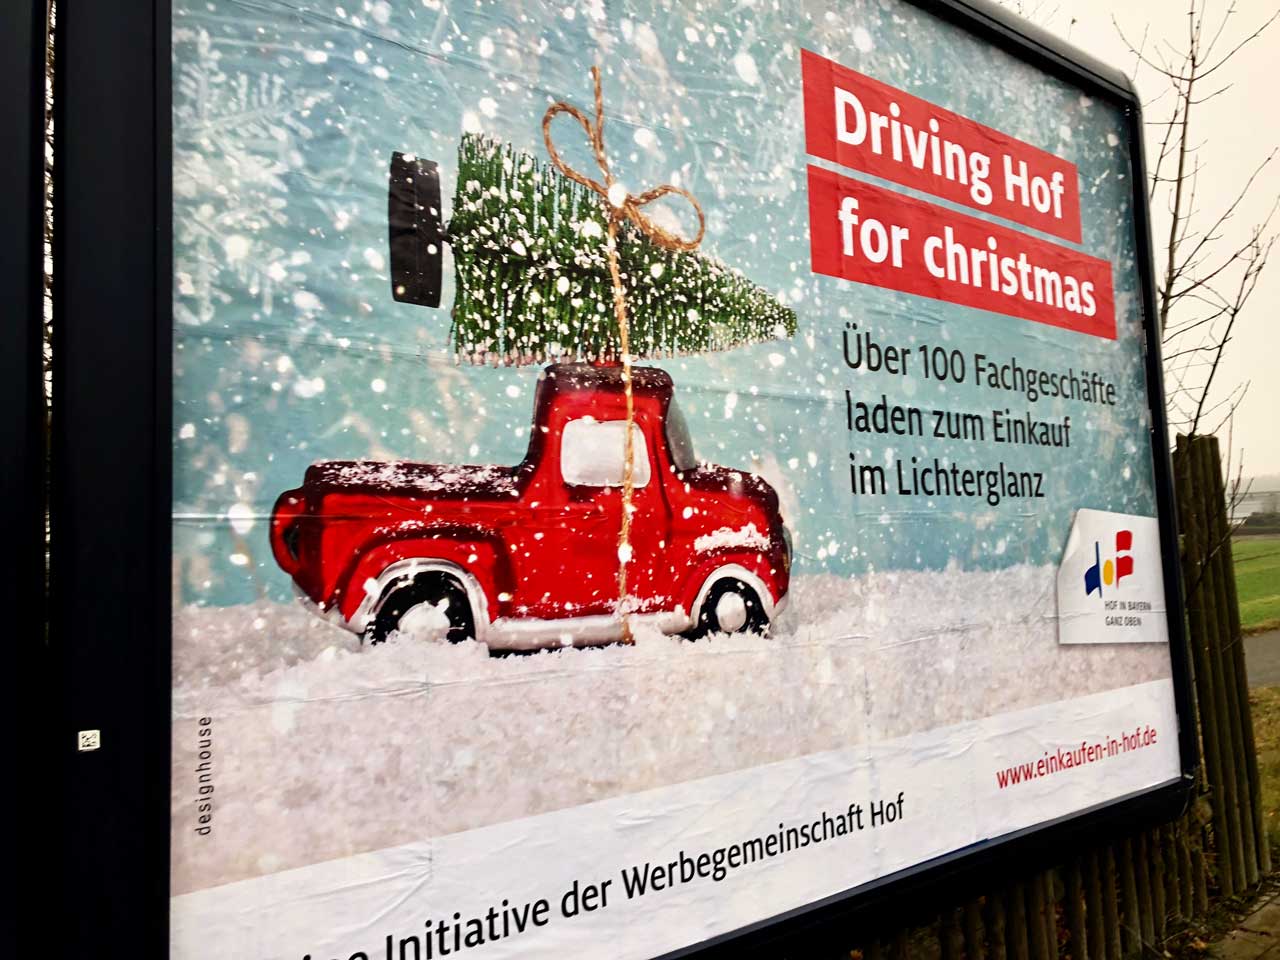 Driving Hof for Christmas Großfläche